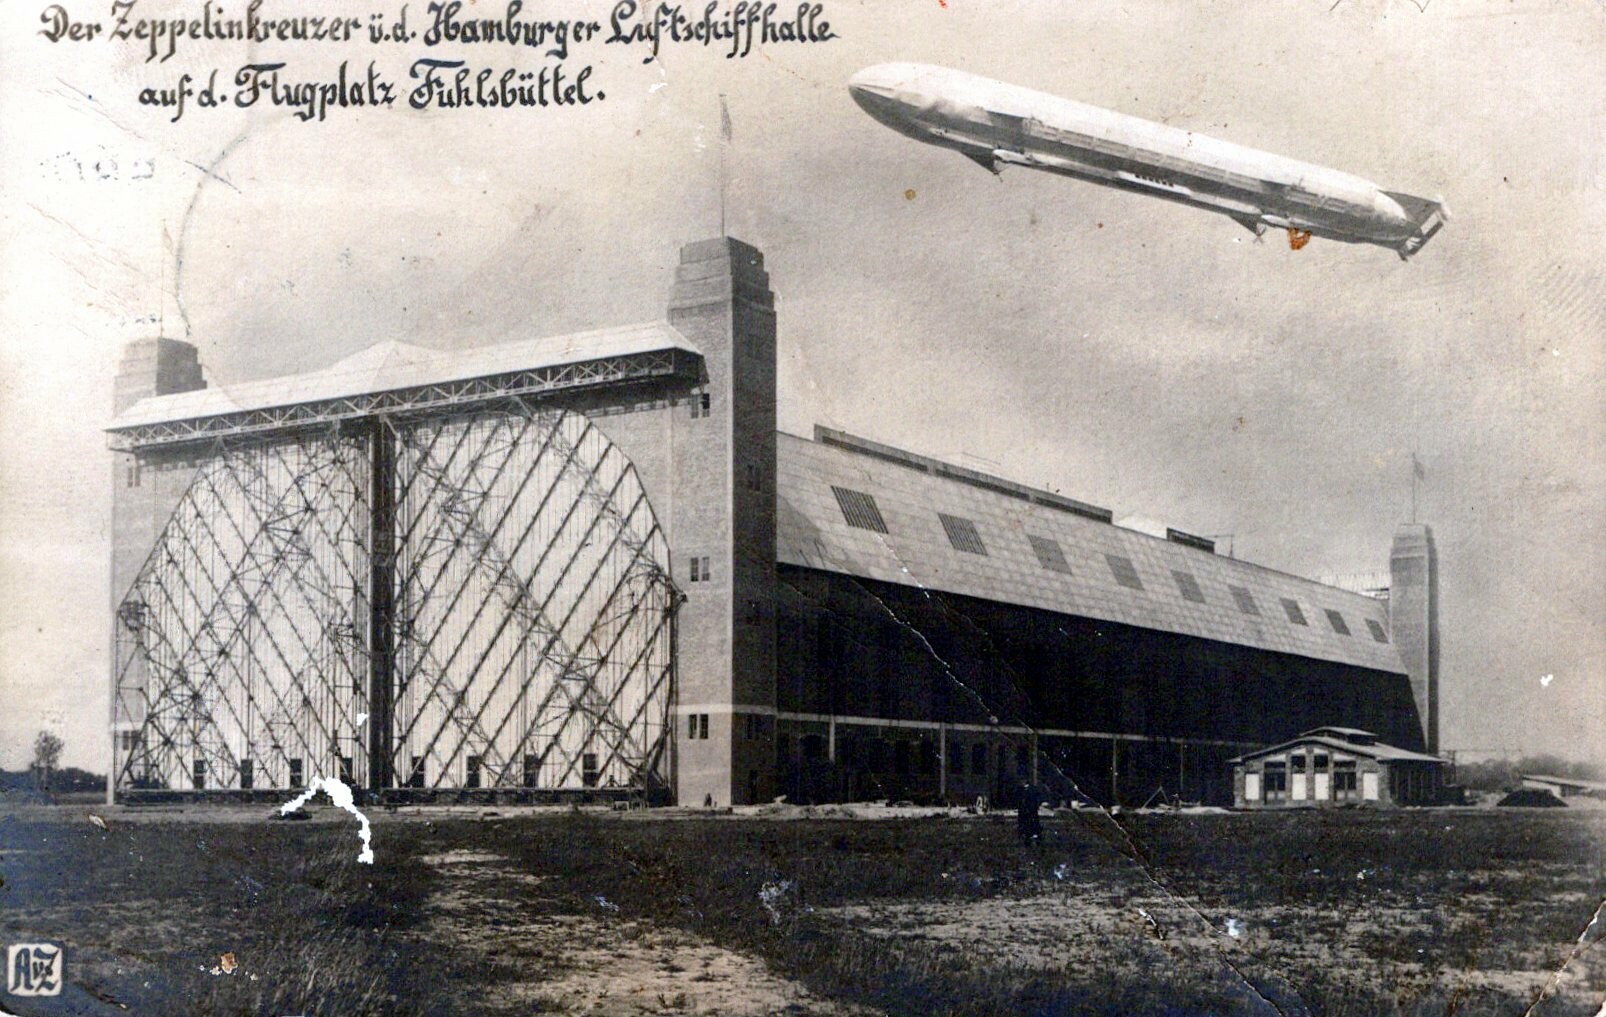 Postkarte: Zeppelin auf Flugplatz (Haus Schminke RR-F)